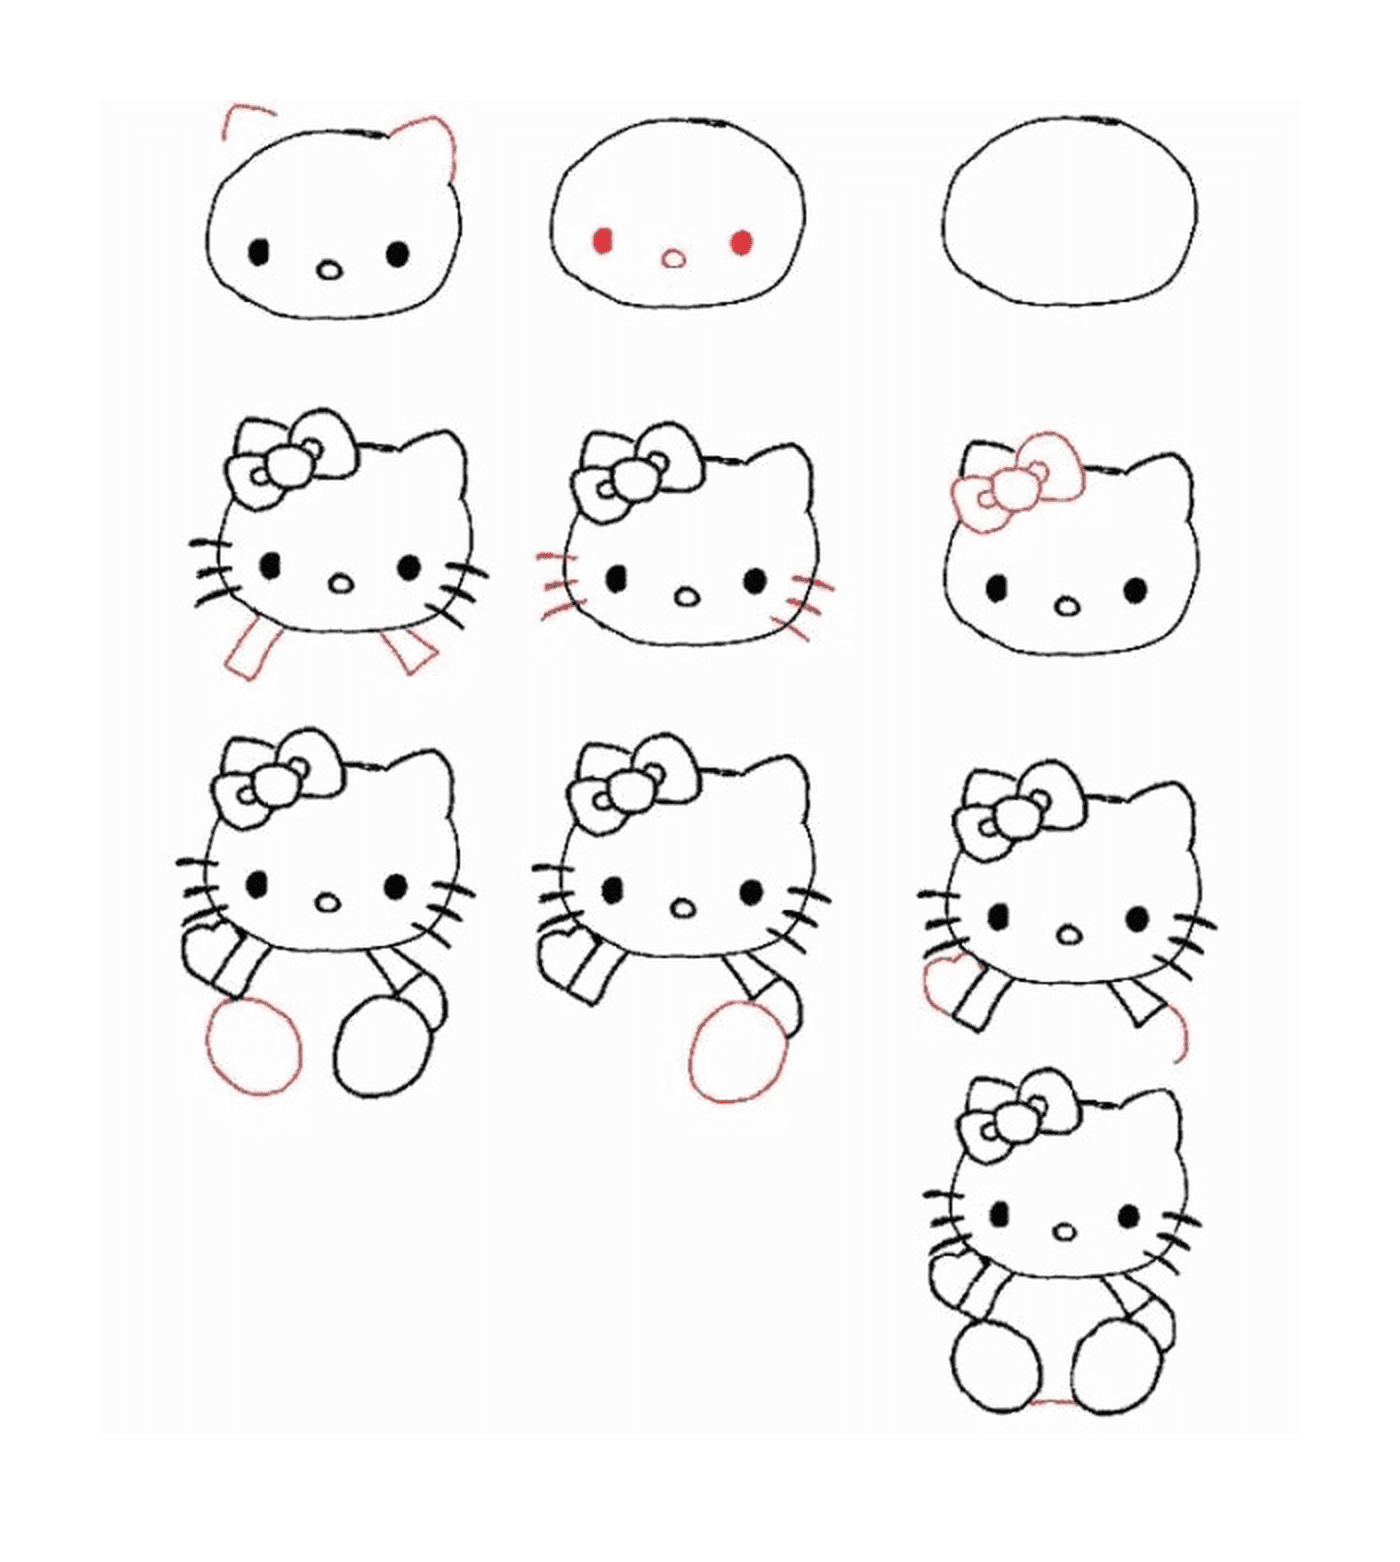  Instrucciones paso a paso sobre cómo dibujar Hello Kitty 